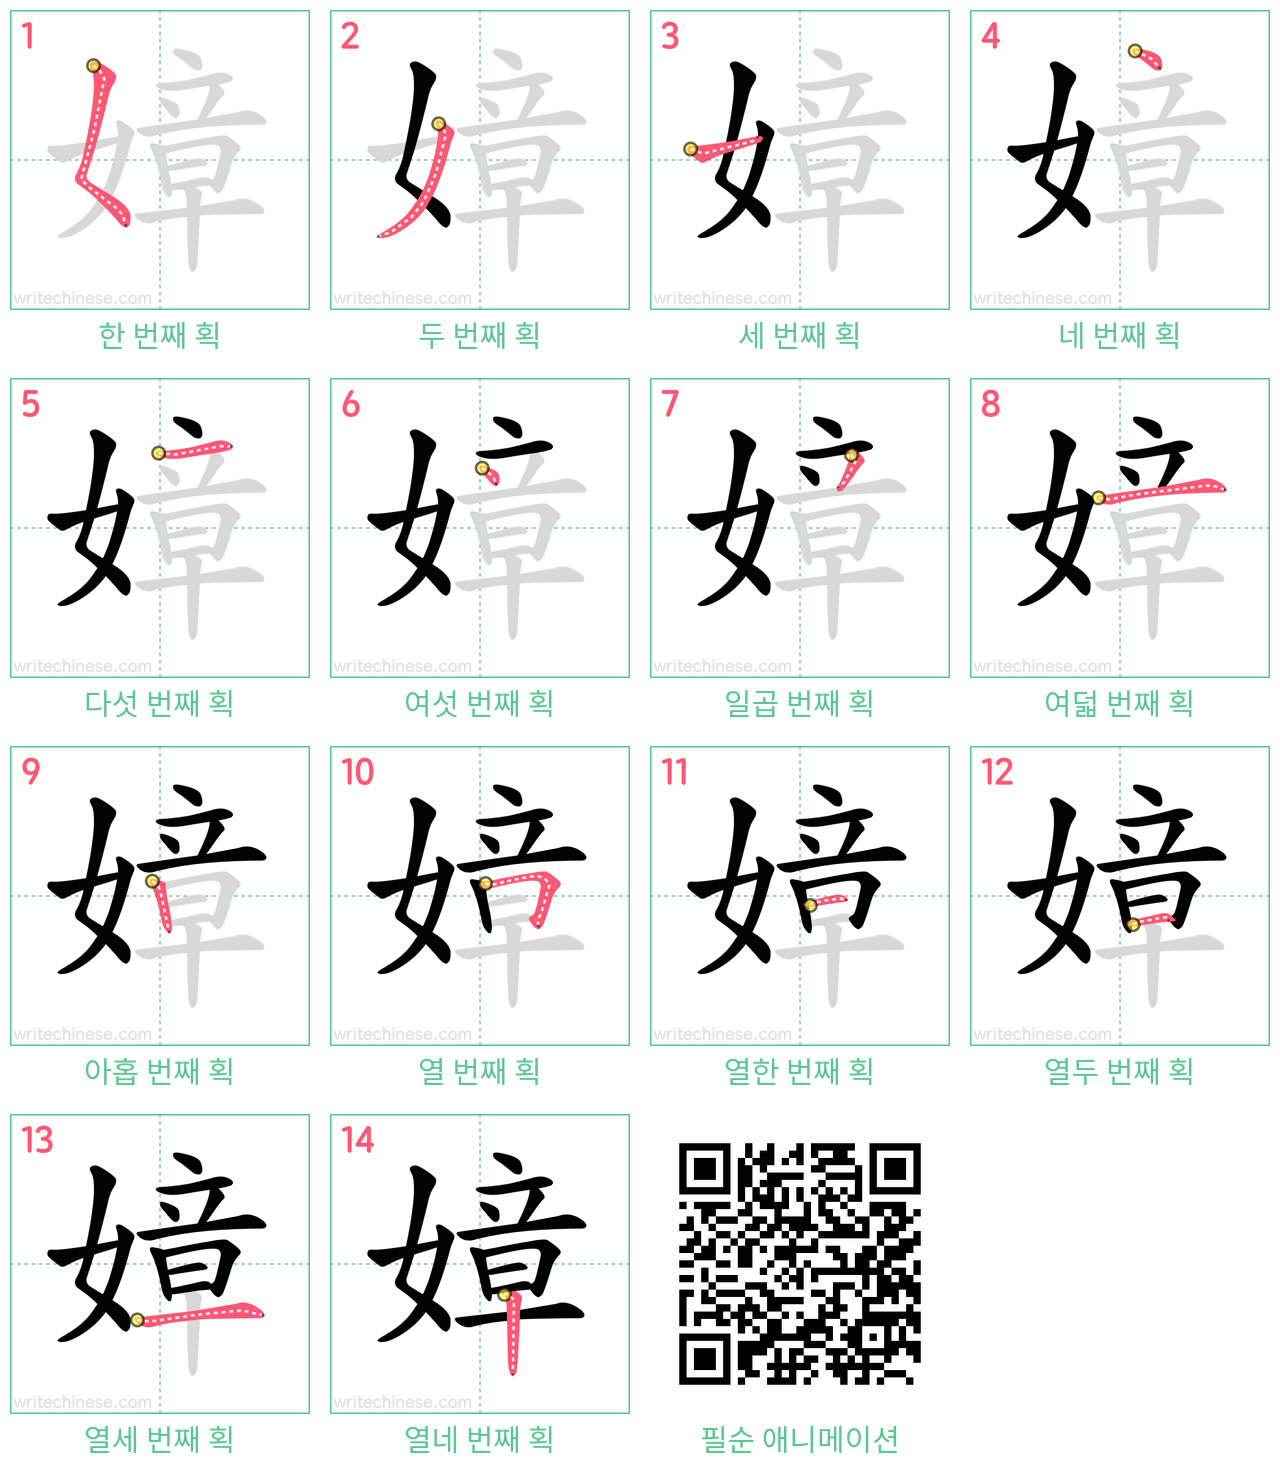 嫜 step-by-step stroke order diagrams